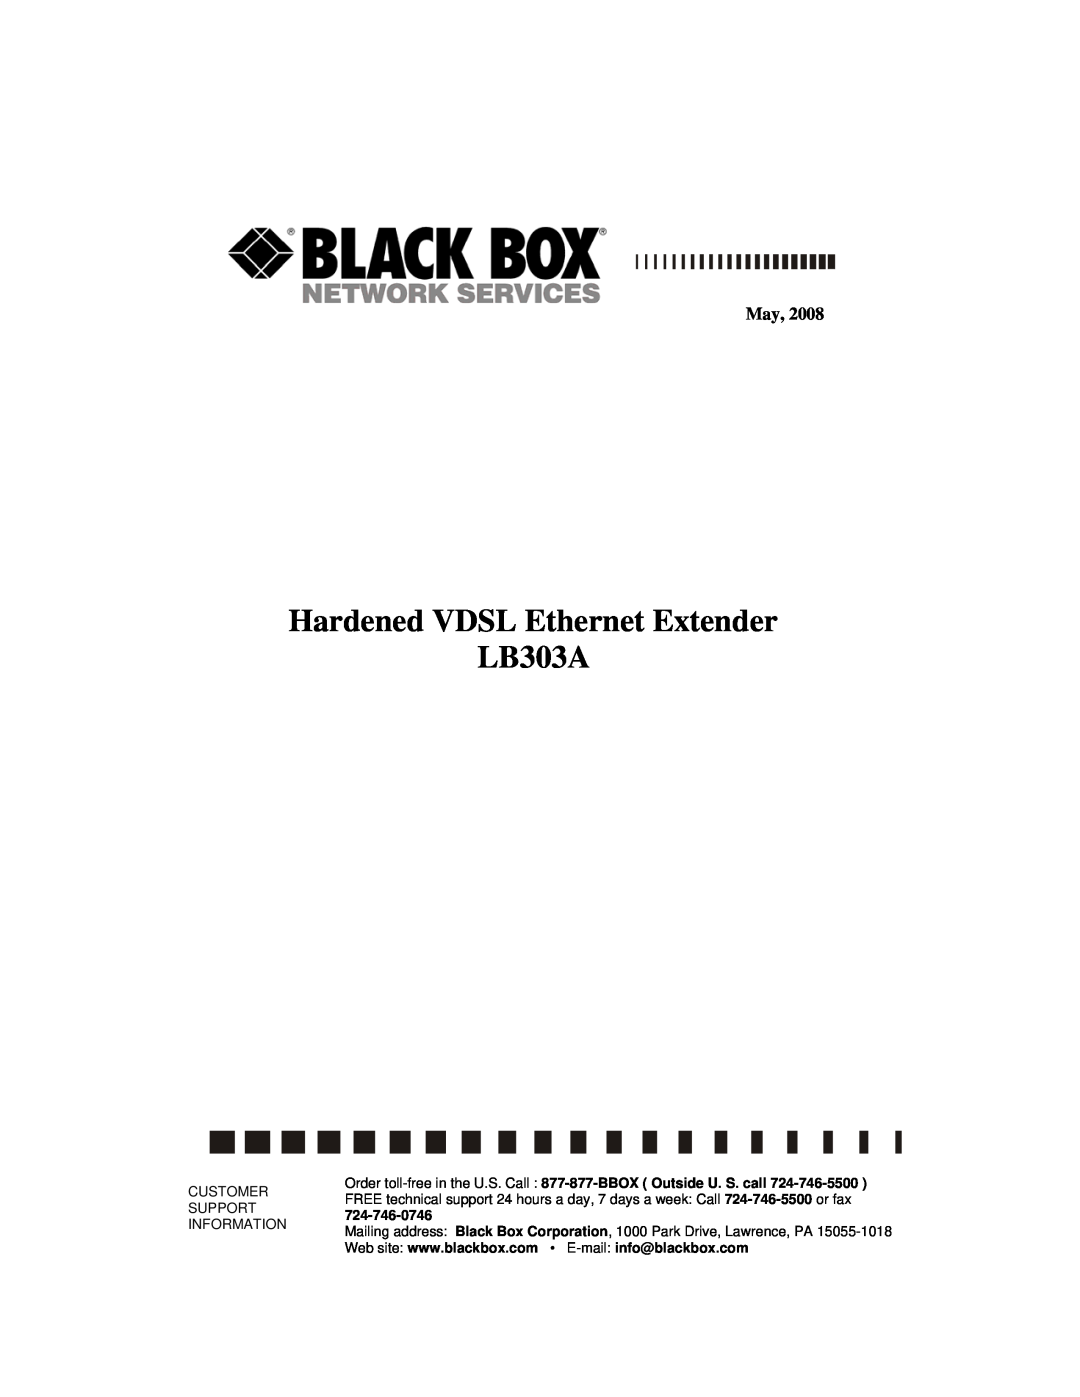 Black Box manual Hardened VDSL Ethernet Extender LB303A, Customer Support Information 